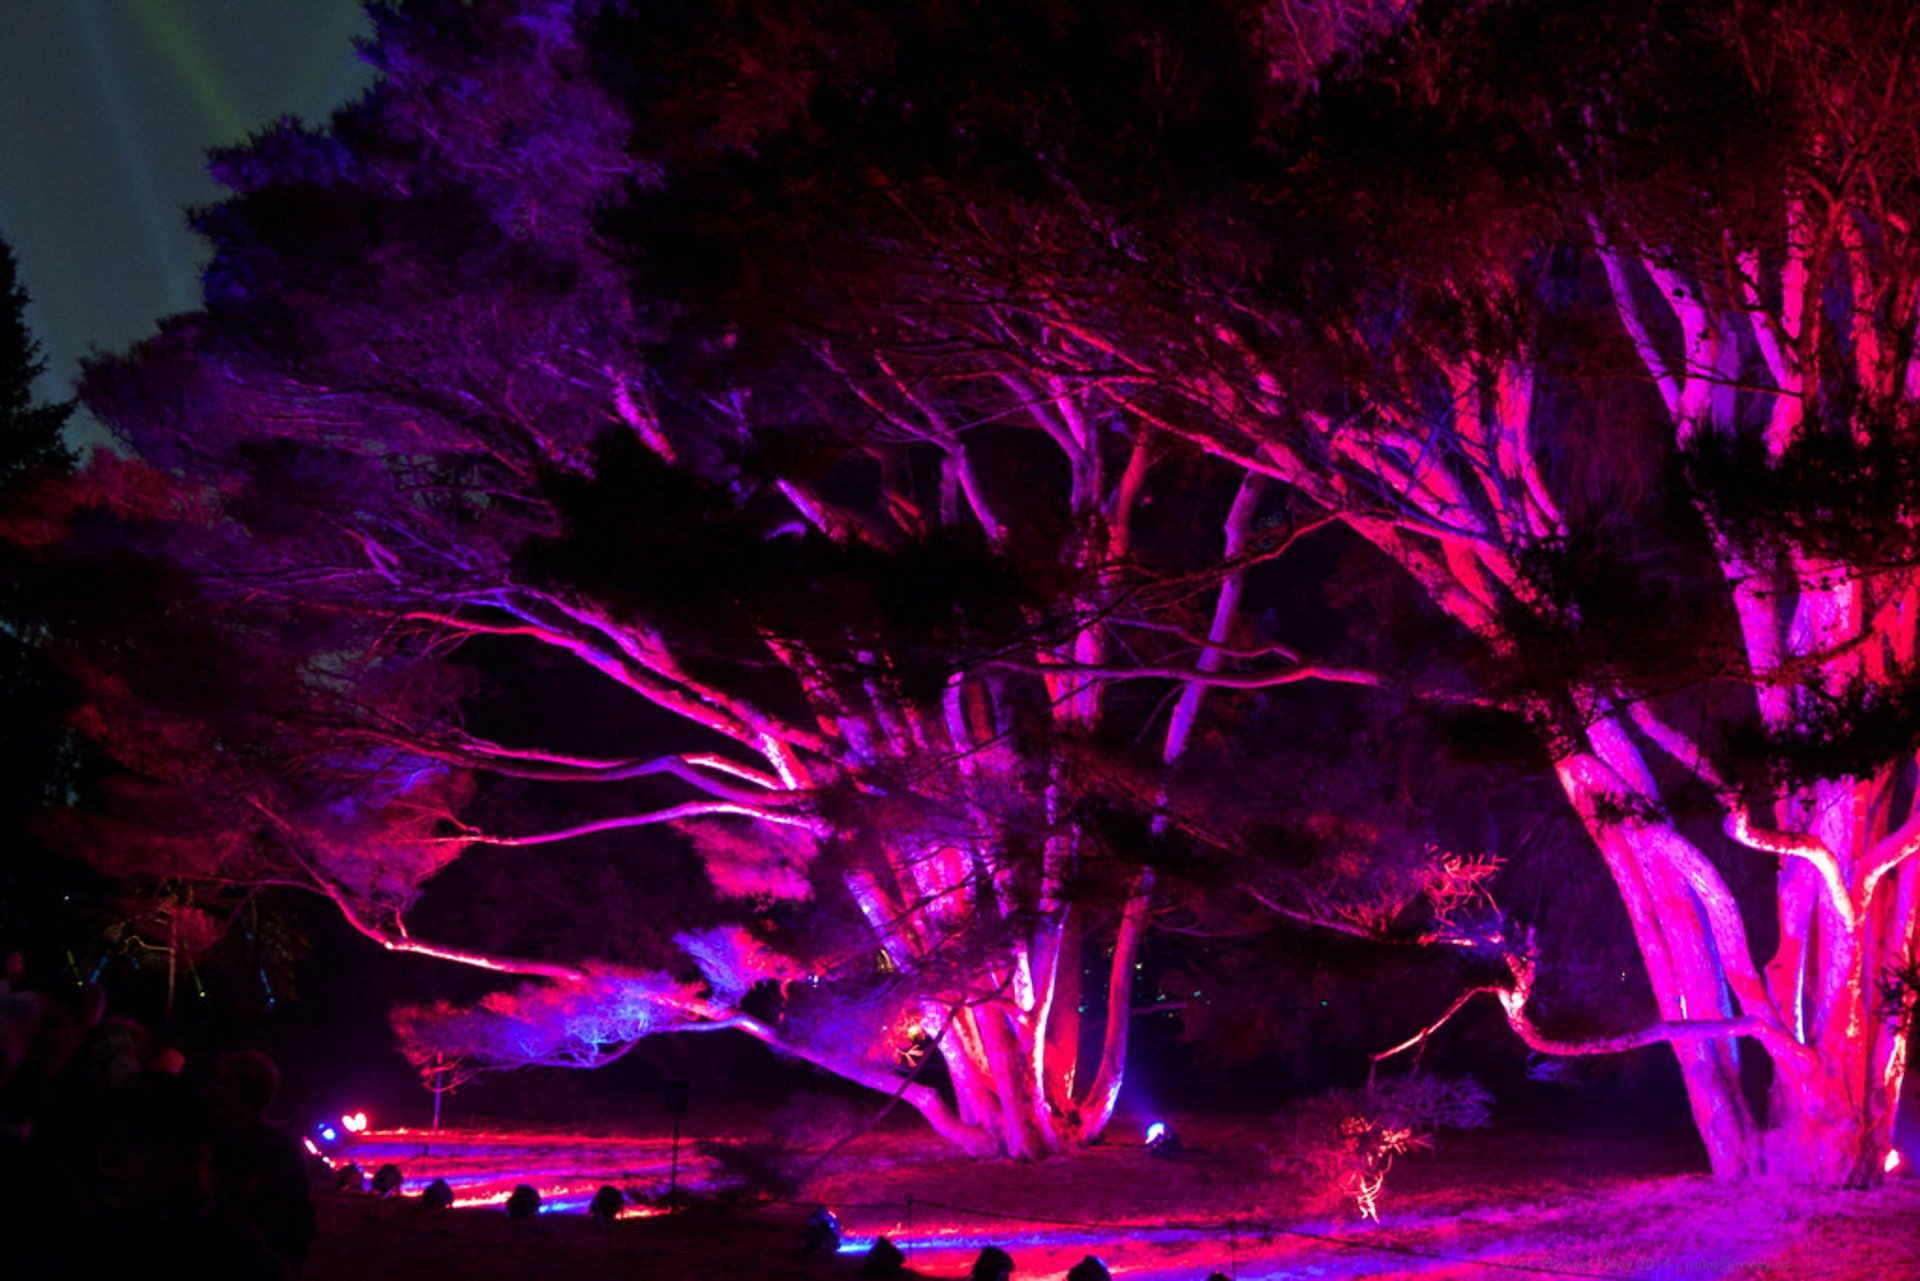 The Morton Arboretum Illumination